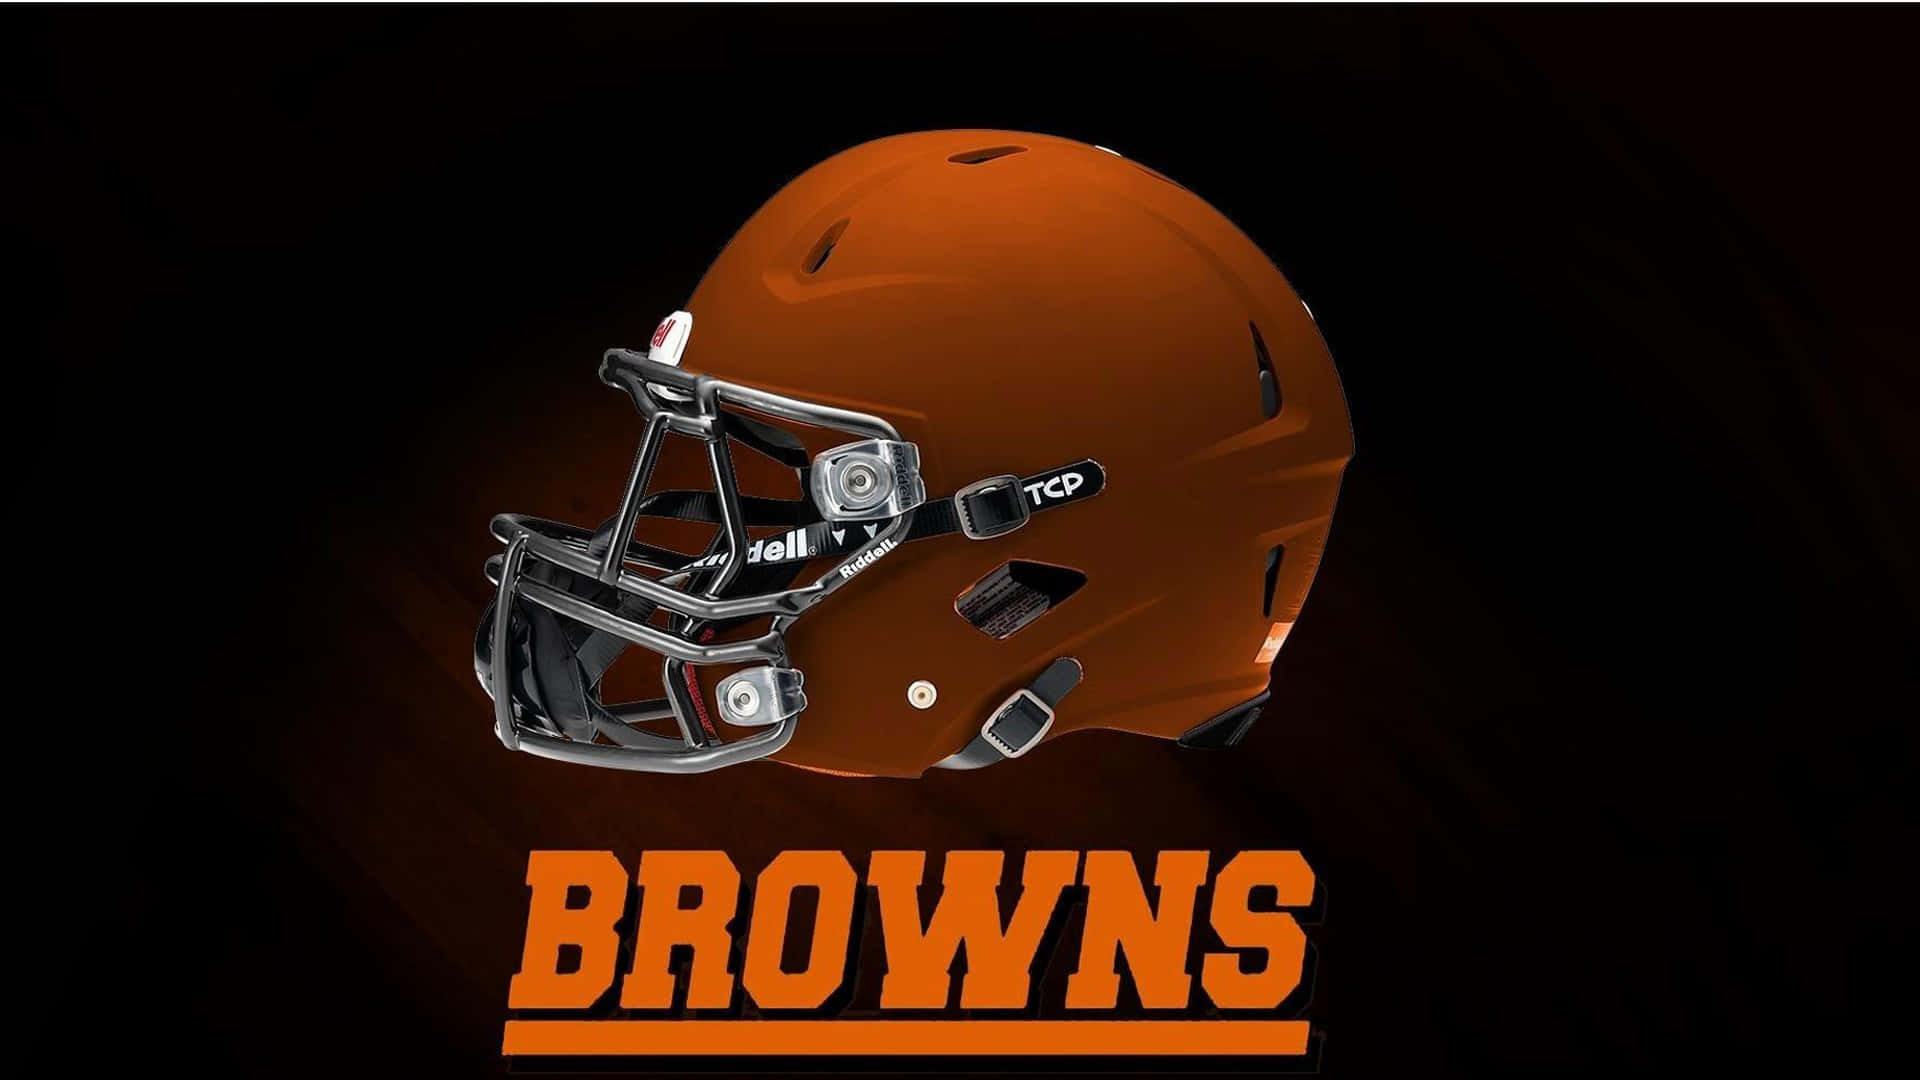 Cleveland Browns-logo 1920 X 1080 Wallpaper